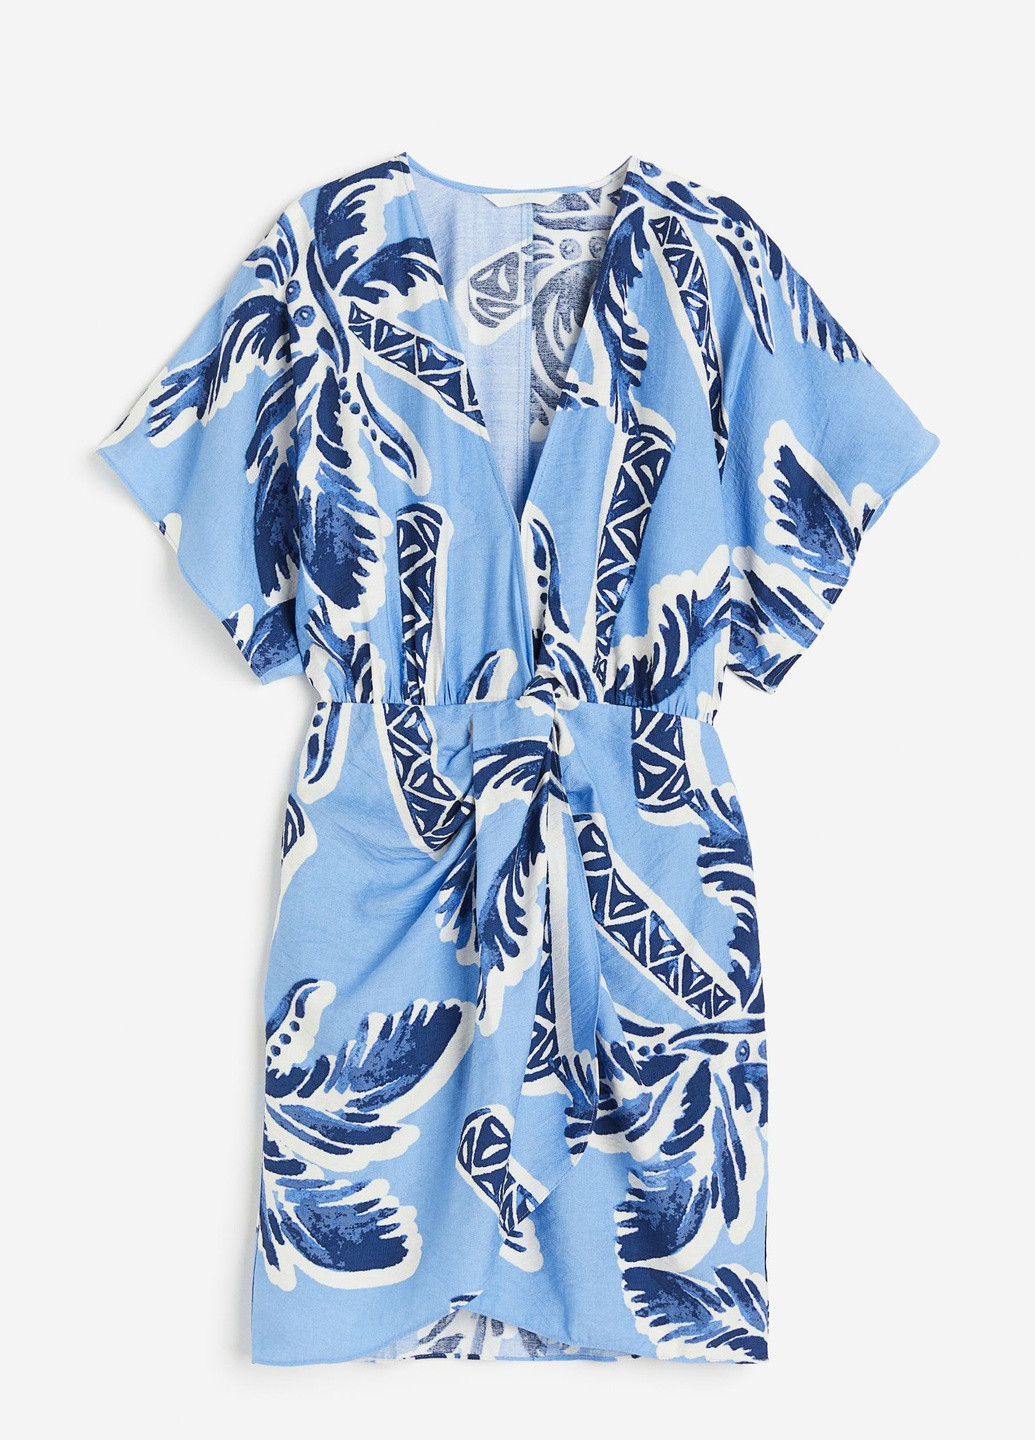 Світло-блакитна повсякденний сукня з v-подібним вирізом на запах H&M з квітковим принтом